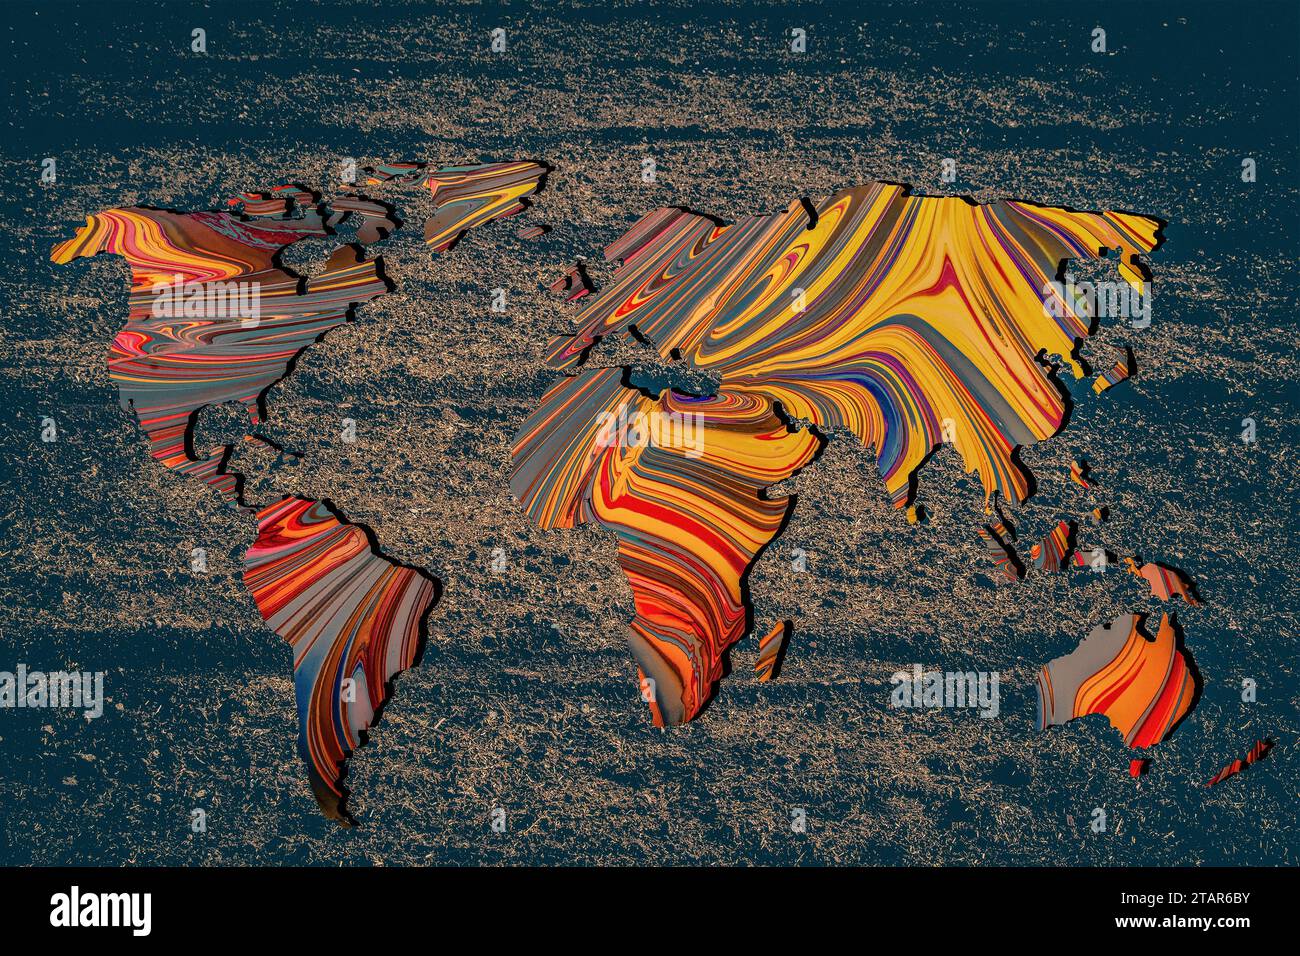 Circa delineato mappa del mondo con una colorata motivi di sfondo Foto Stock